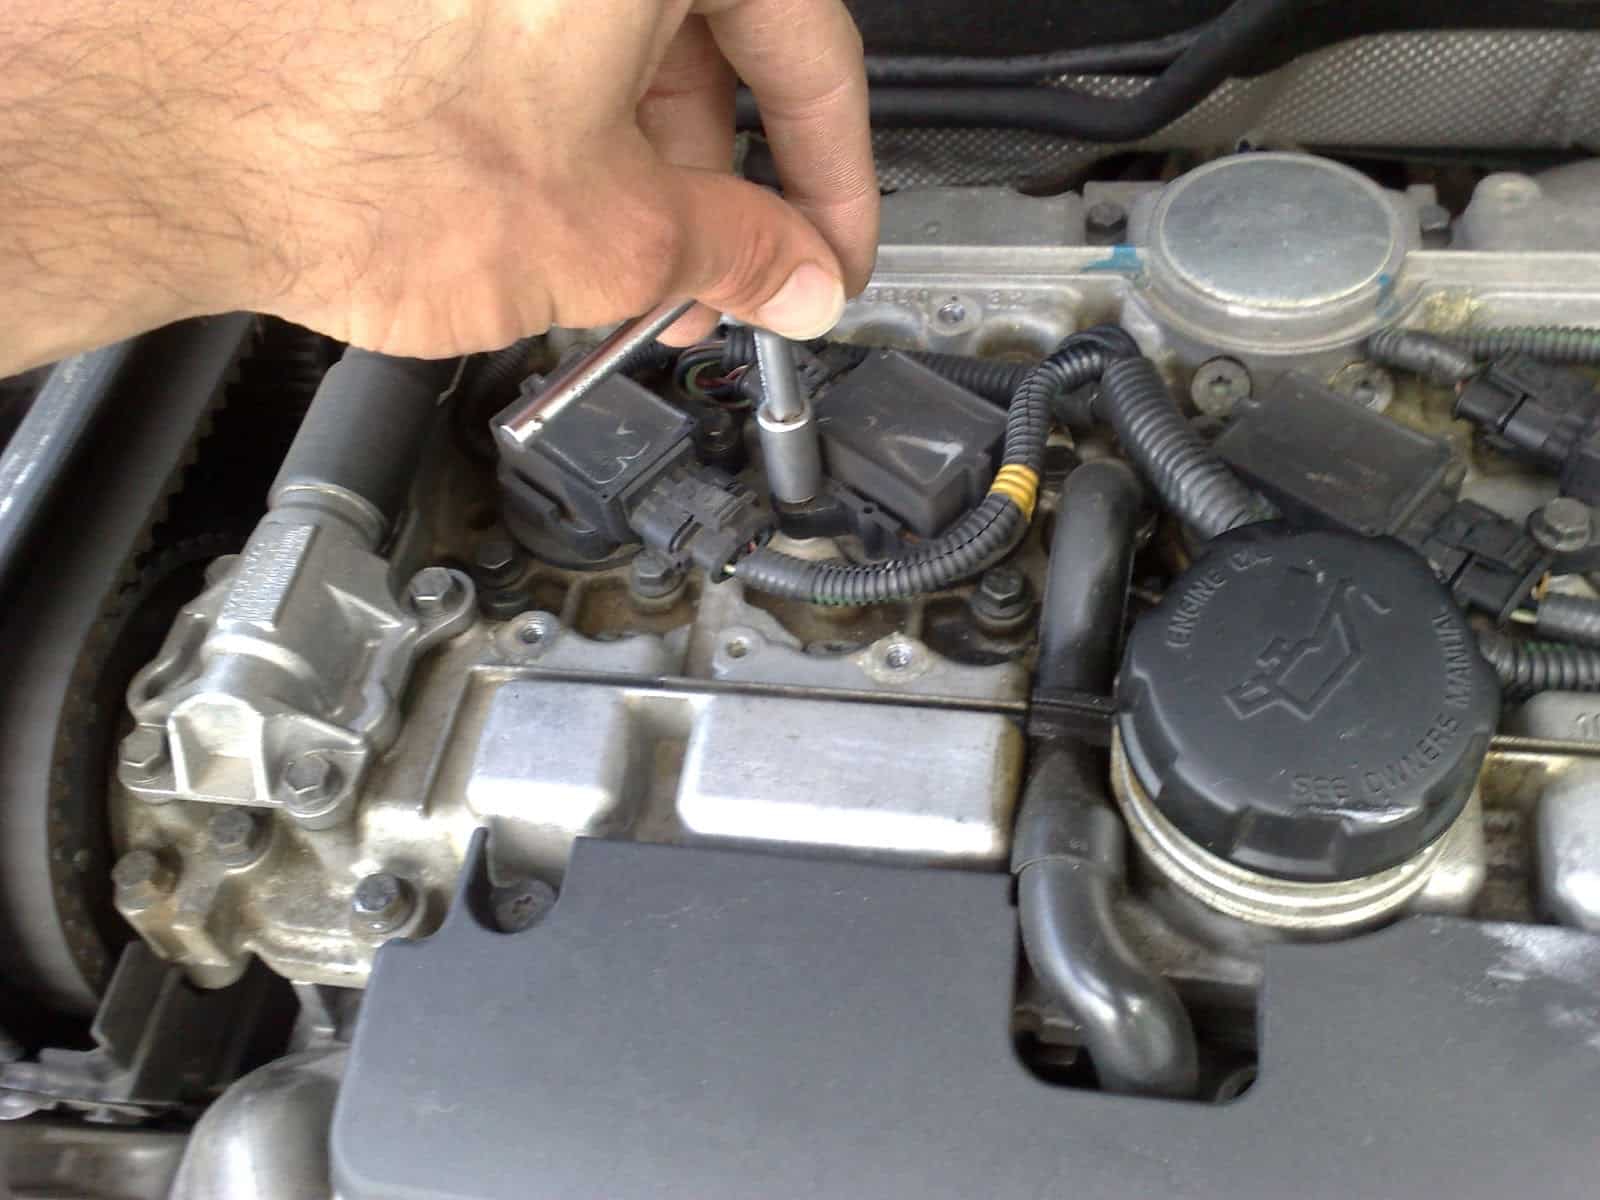 Diagnóstico de Luz Intermitente Check Engine en Nissan Altima.